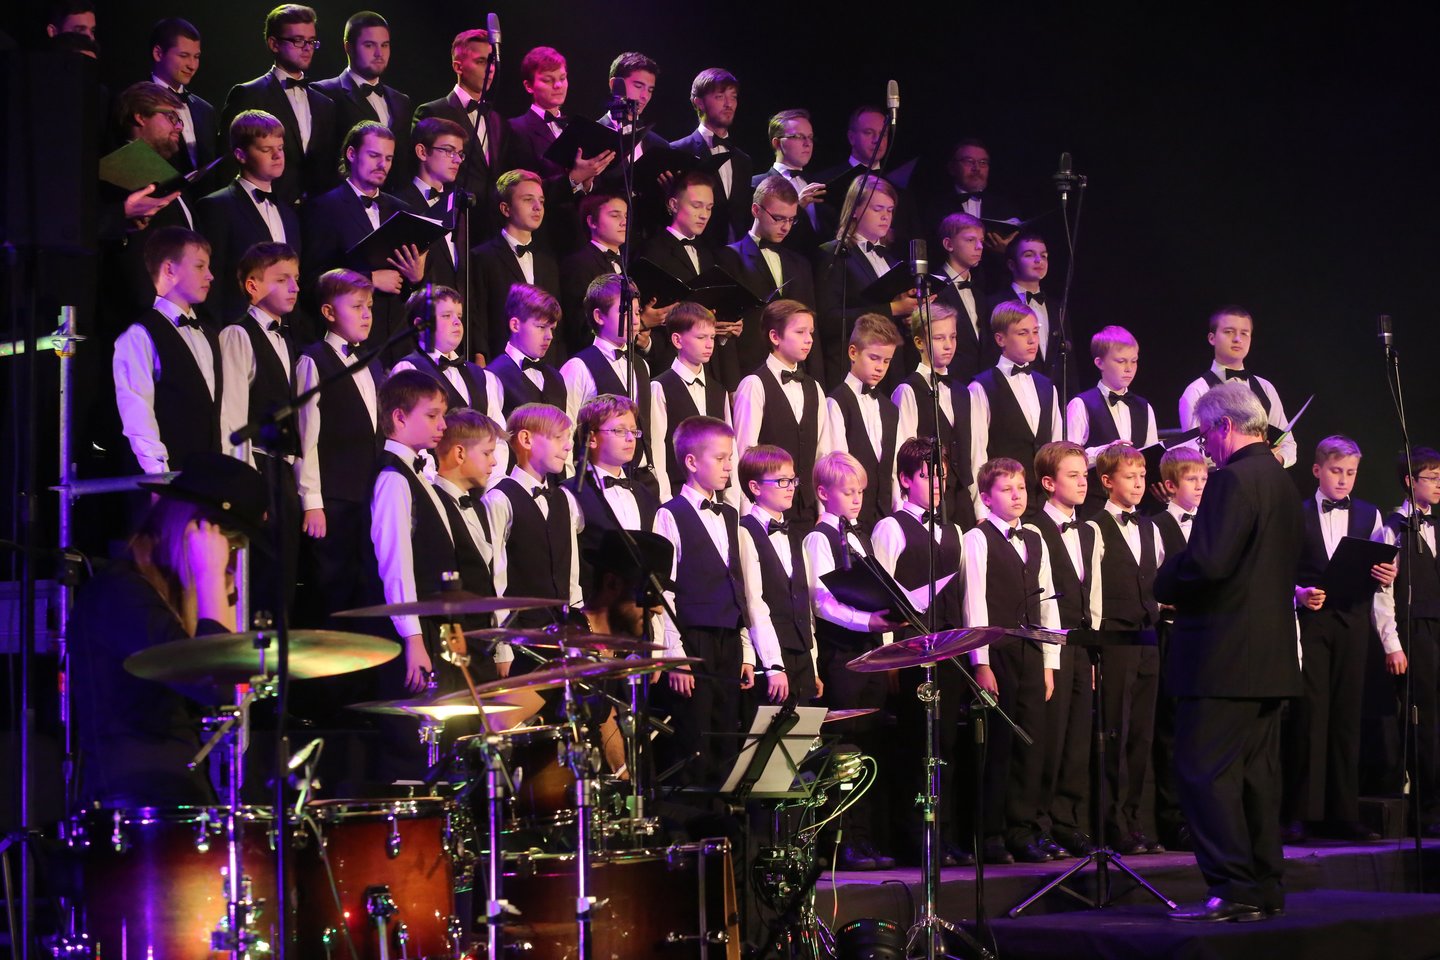 1961 m. įvyko pirmasis Respublikinių mokytojų namų berniukų ir jaunuolių choro „Ąžuoliukas“ koncertas. Choras jo vadovo Hermano Perelšteino iniciatyva buvo įkurtas 1959 m.<br>R.Danisevičiaus nuotr.